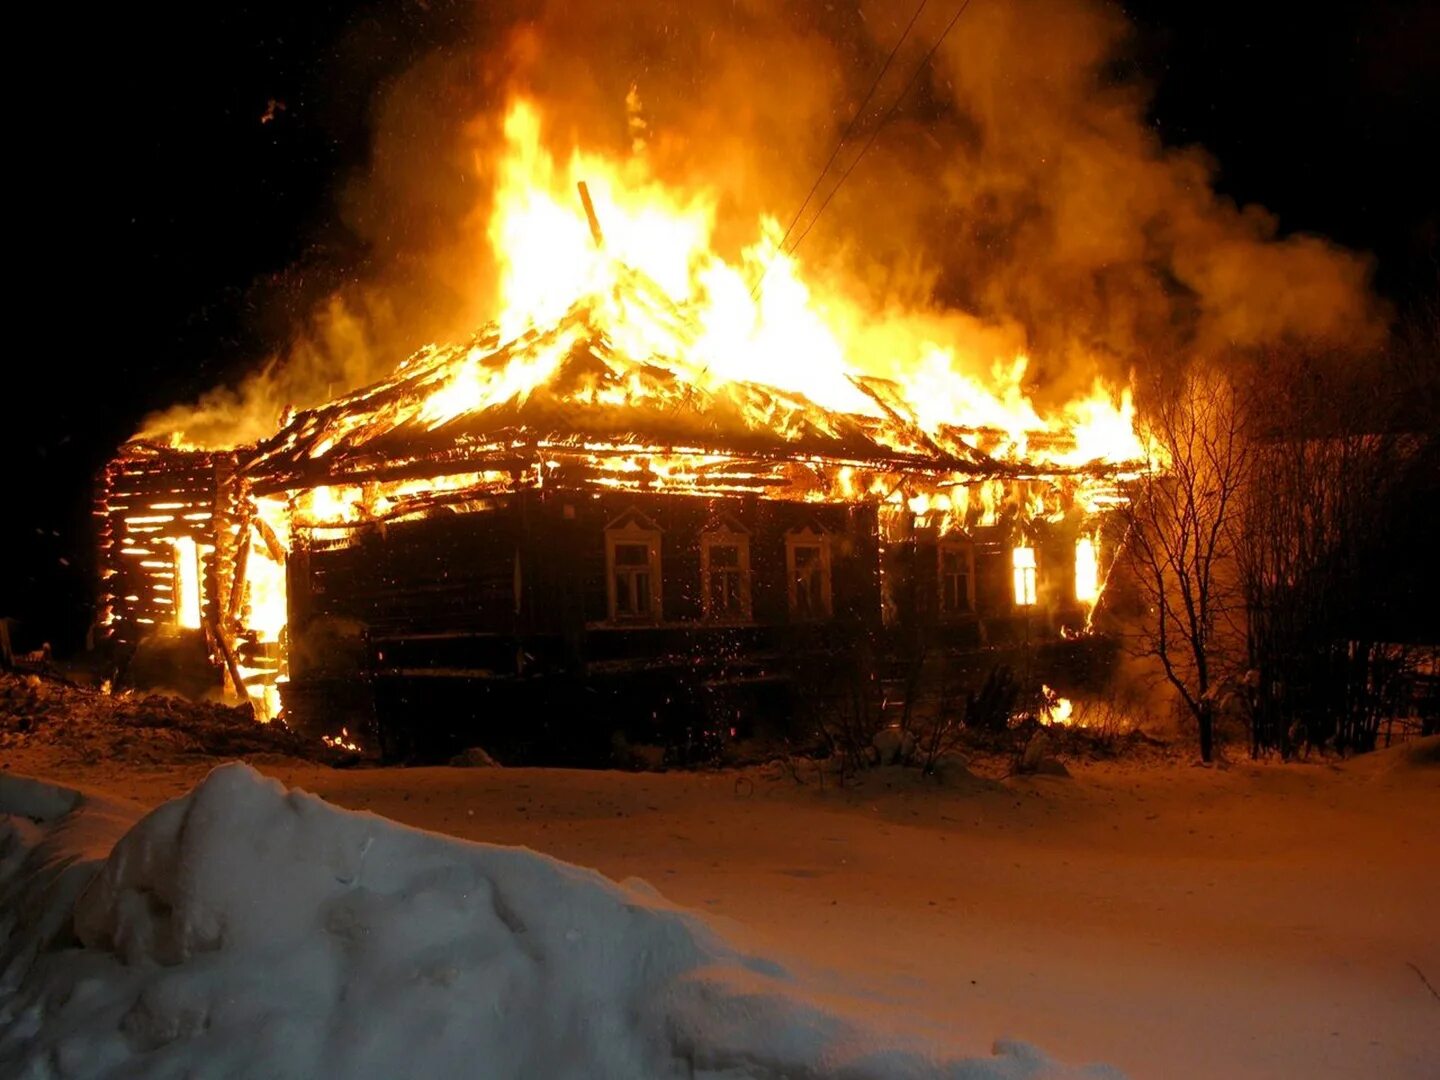 11 января 2023 года. Дом горит. Горящий дом в деревне. Гарещтй дом. Пожар в доме.